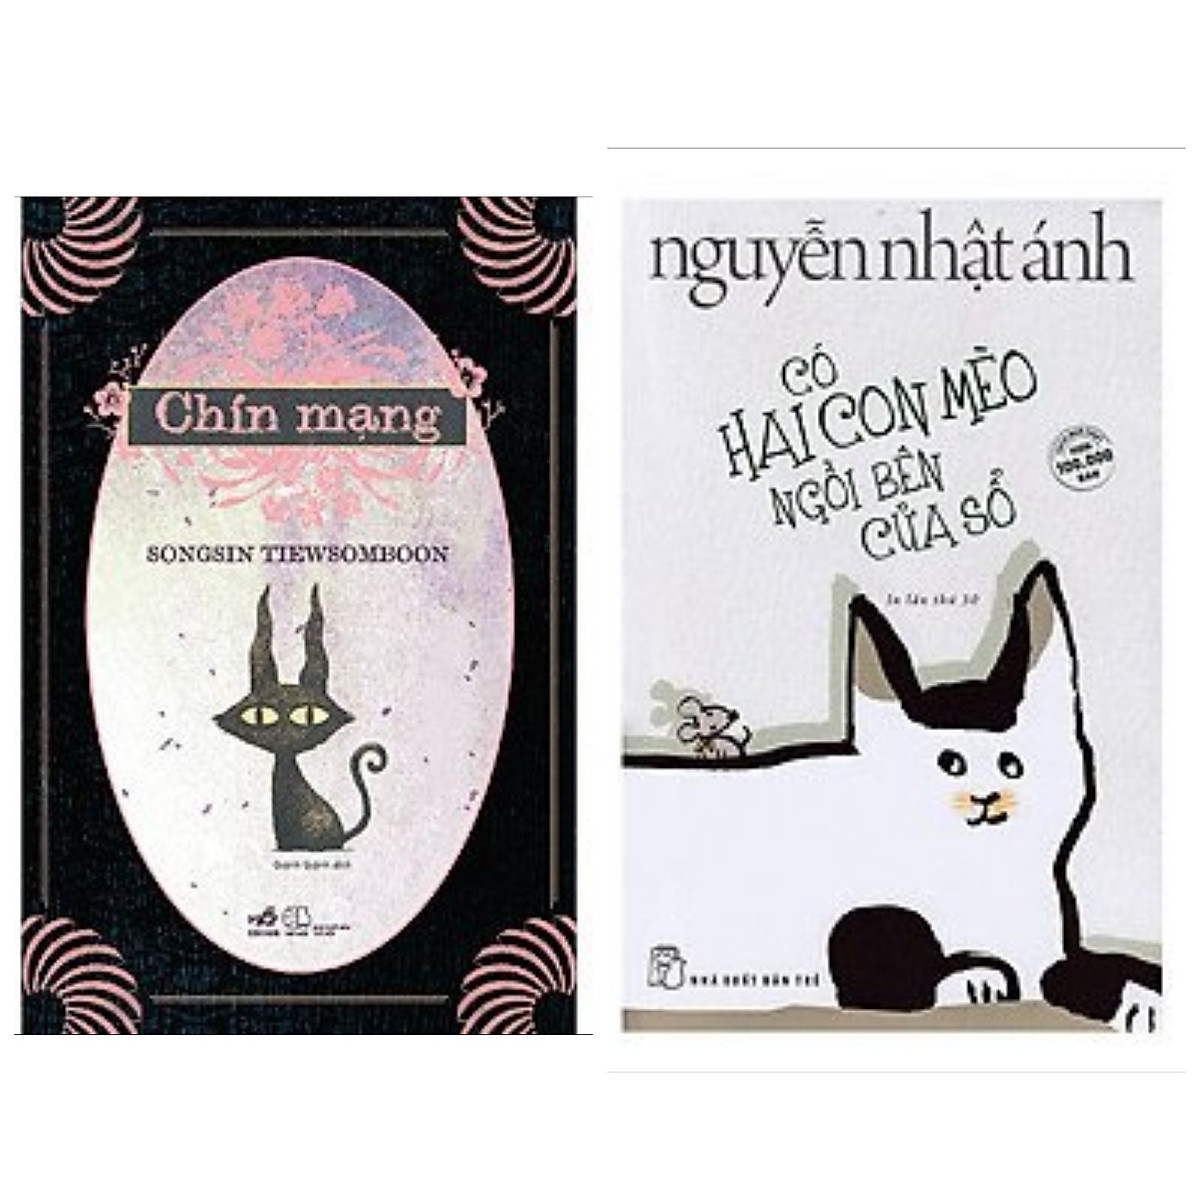 Mua Combo 2 cuốn: Có Hai Con Mèo Ngồi Bên Cửa Sổ + Chín Mạng + ...